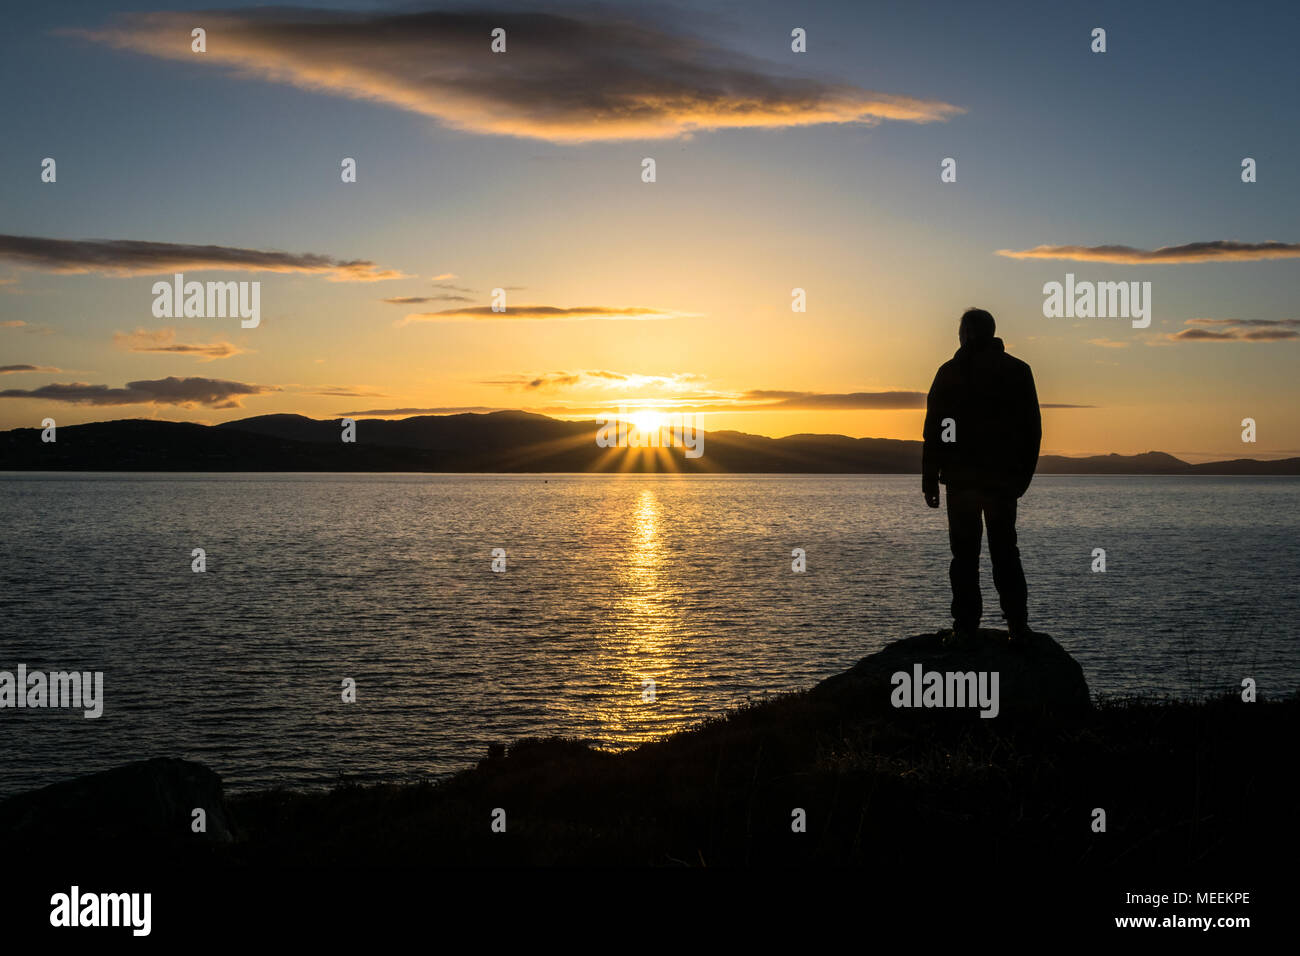 C'est la silhouette d'une personne regardant le soleil se coucher derrière des montagnes à la mer. Cette photo a été prise près de l'Irlande Buncrana Banque D'Images